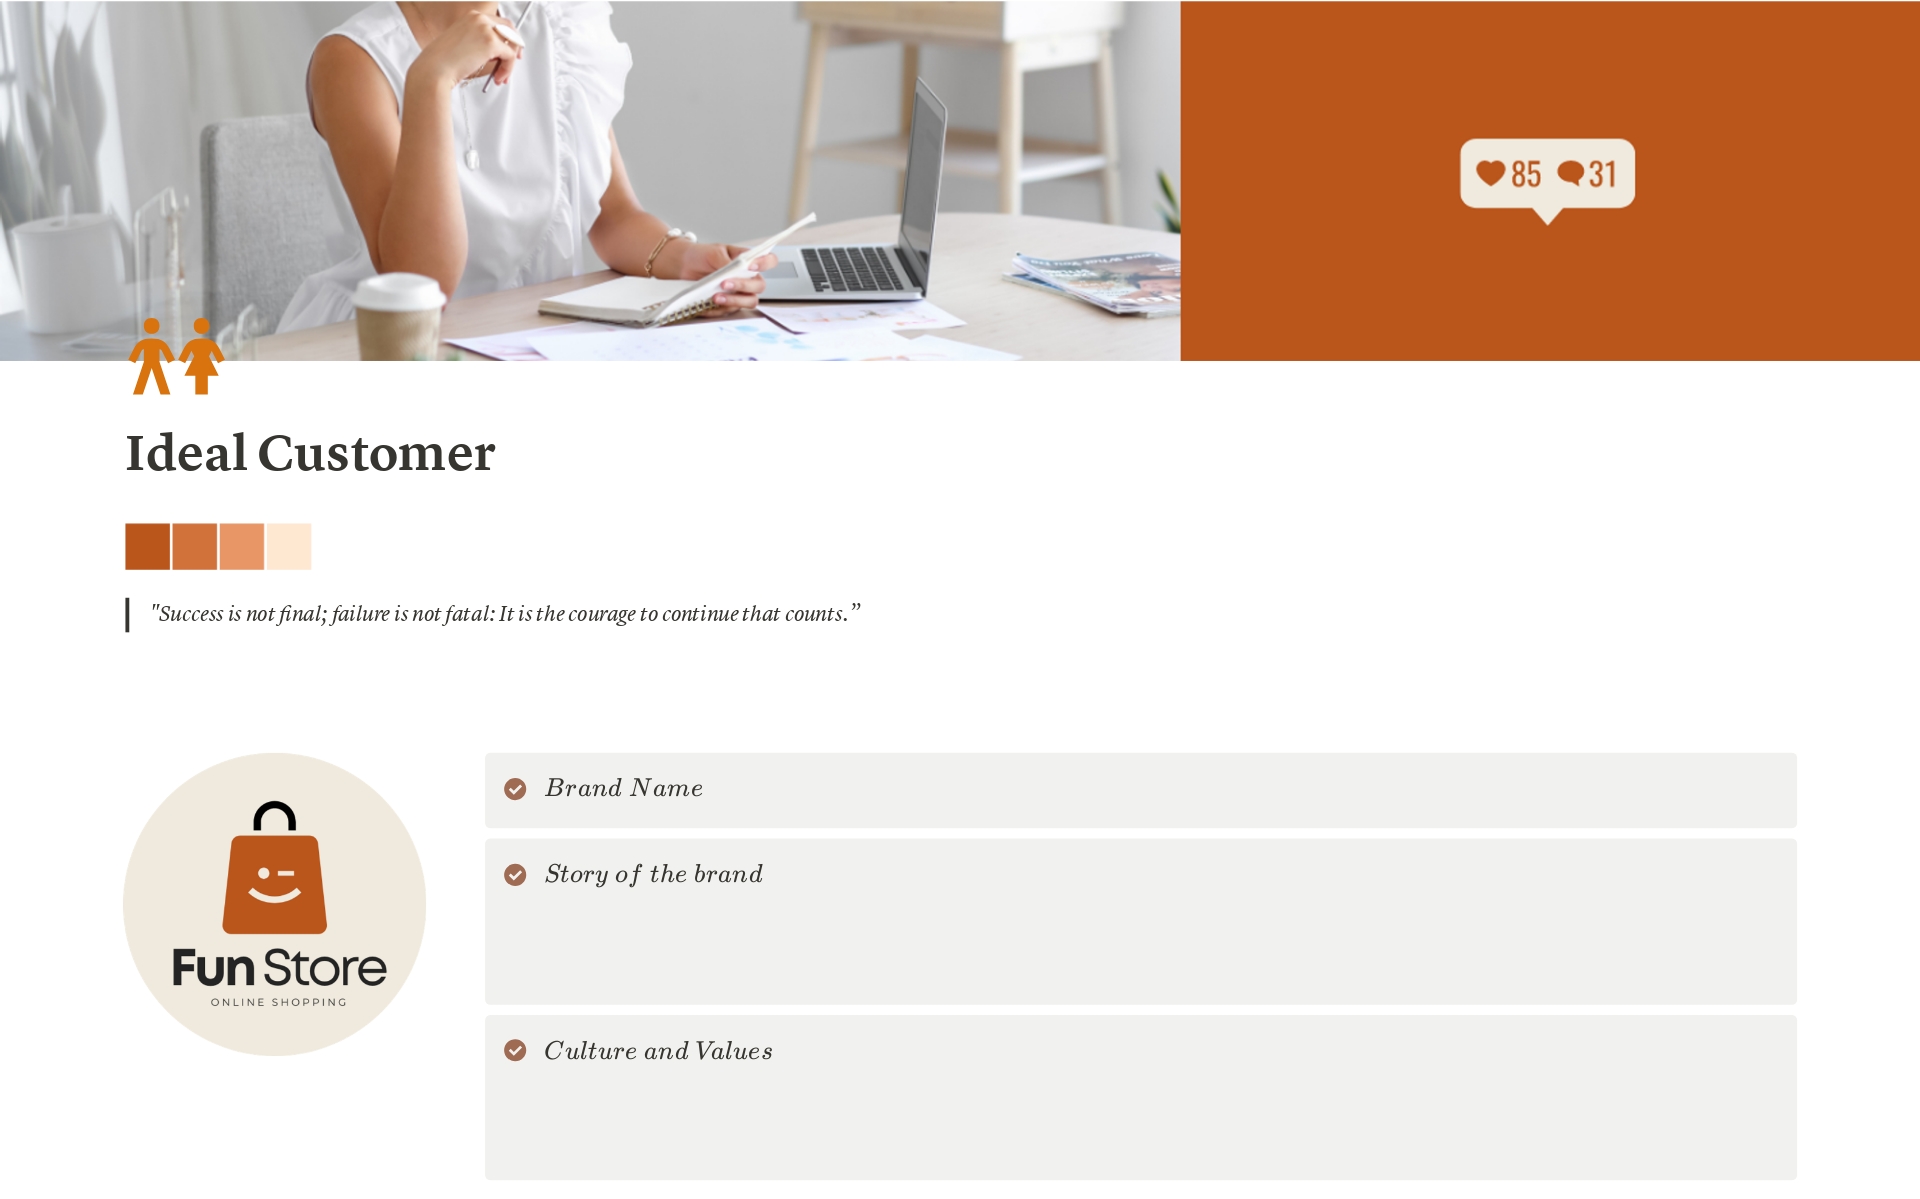 Vista previa de una plantilla para Ideal Customer Profile